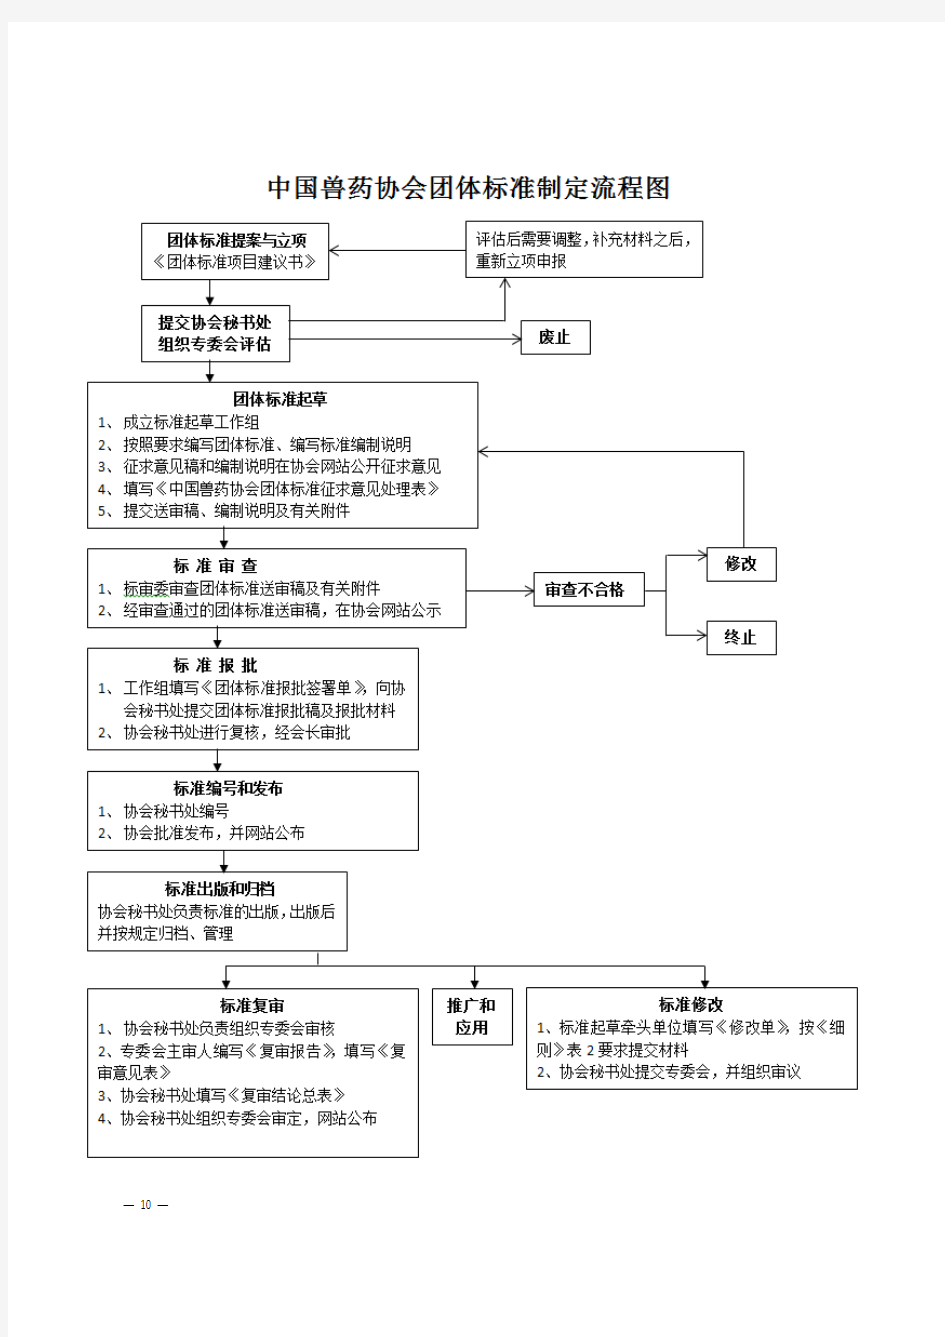 中国兽药协会团体标准制定工作程序